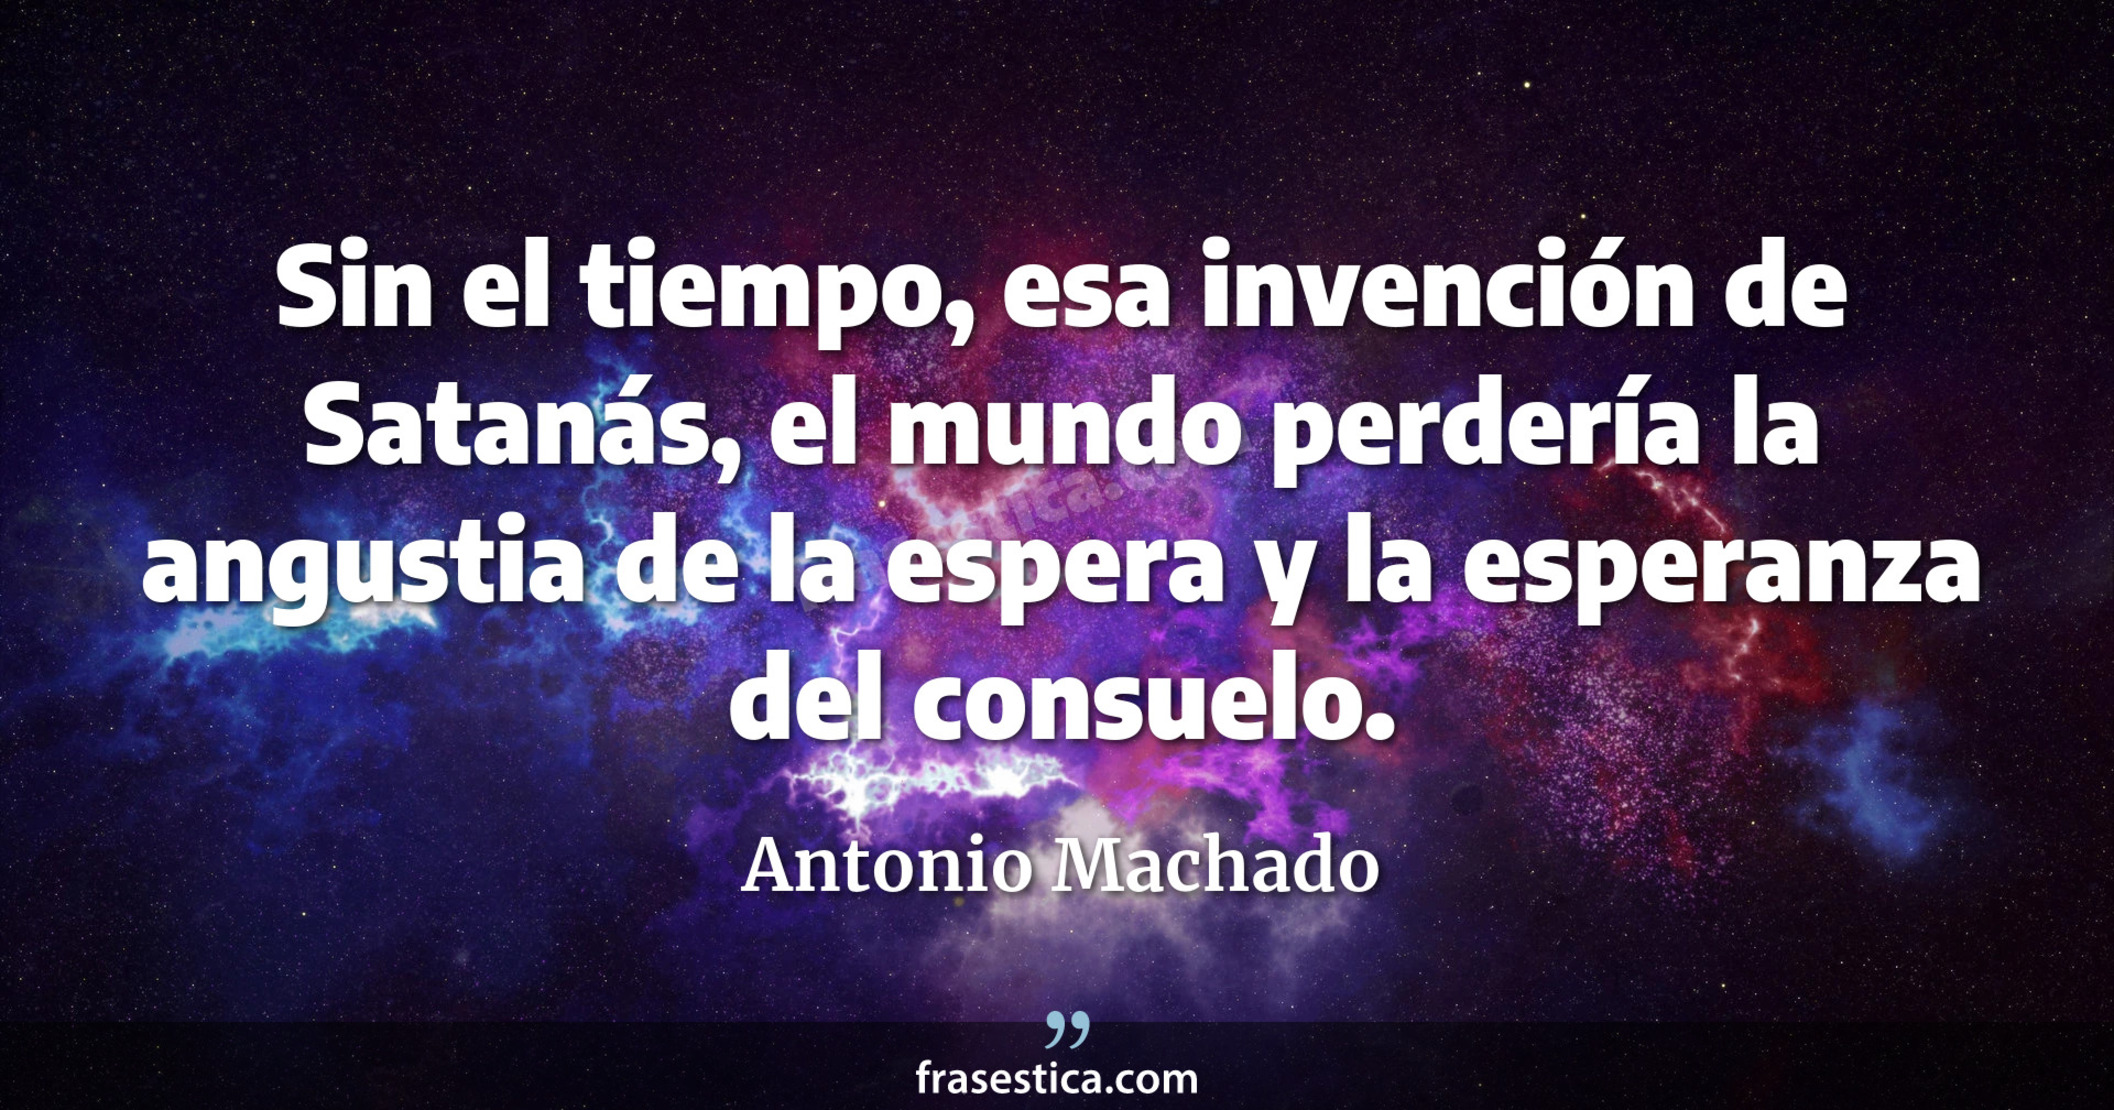 Sin el tiempo, esa invención de Satanás, el mundo perdería la angustia de la espera y la esperanza del consuelo. - Antonio Machado